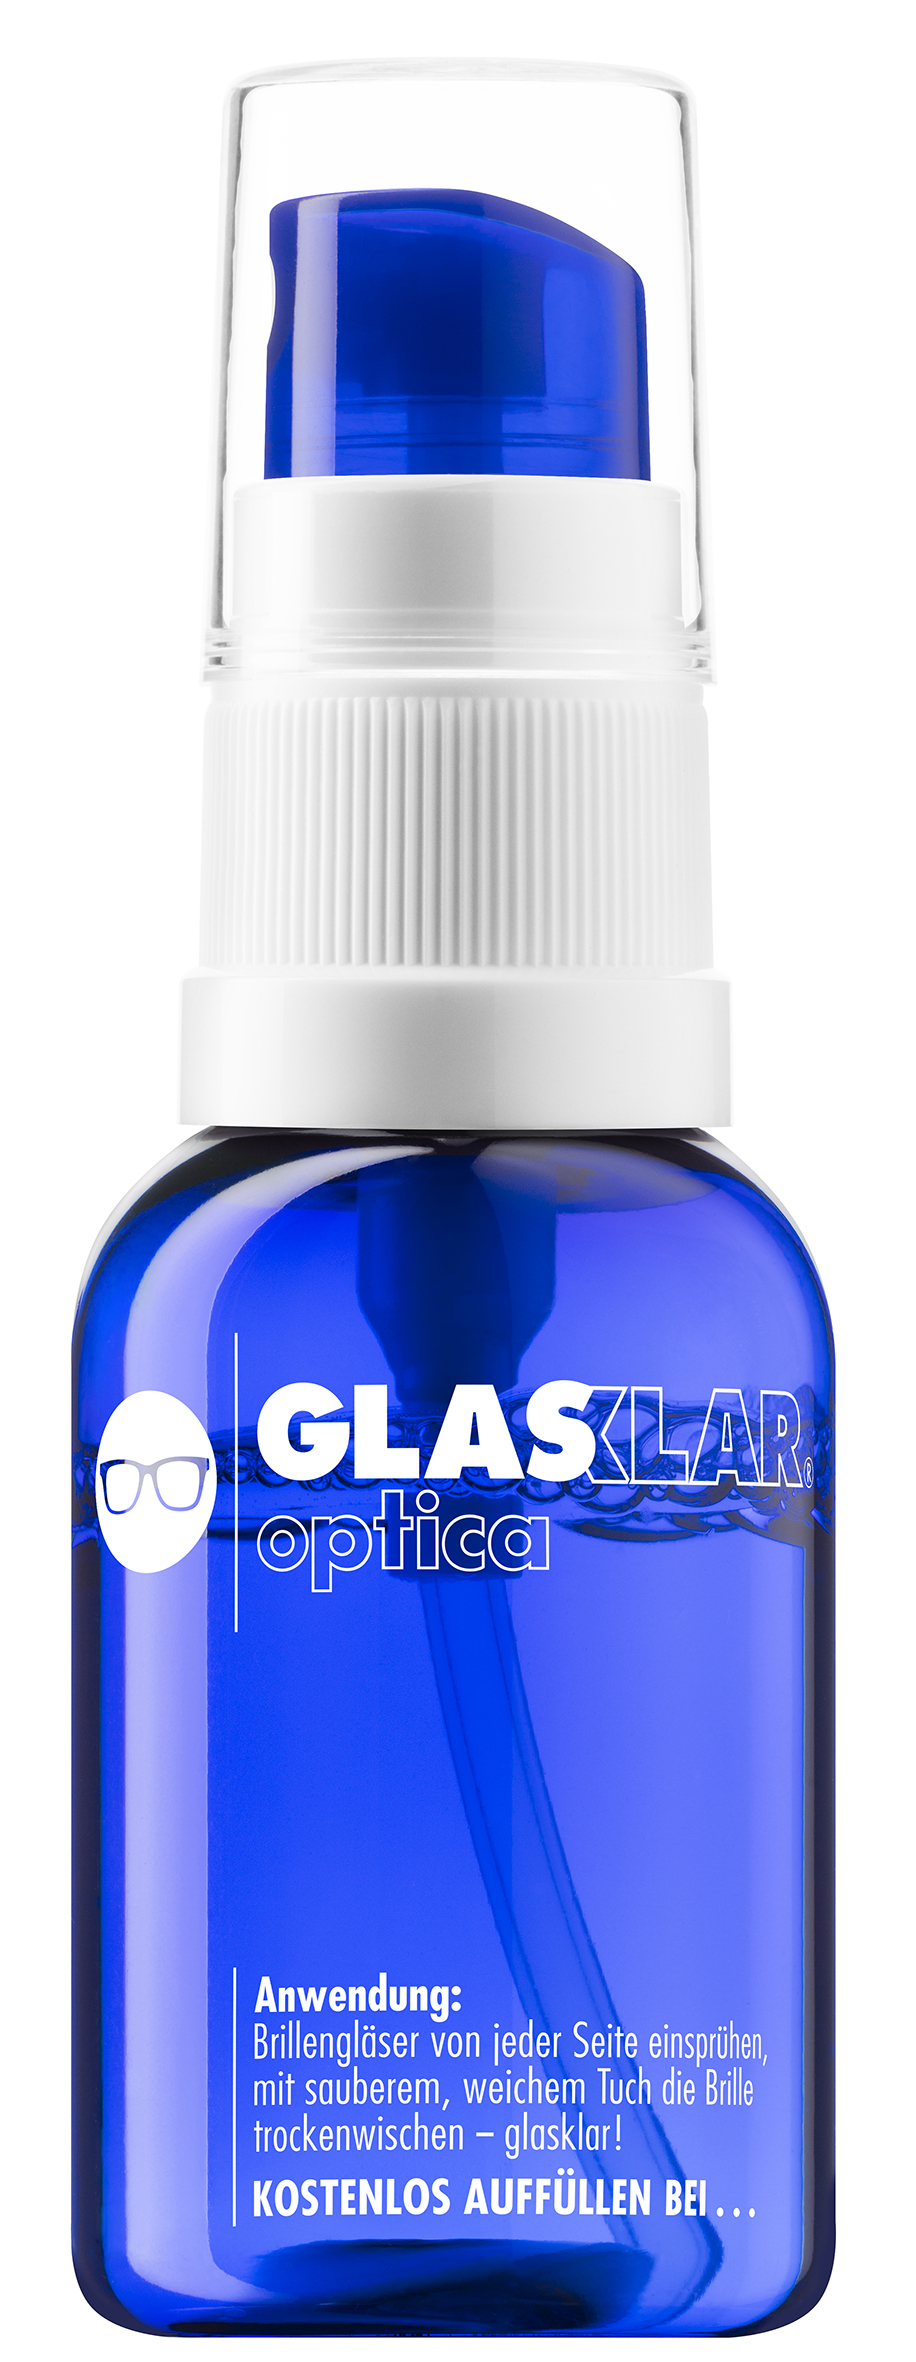 GLASKLAR optica_bottle blue.jpg